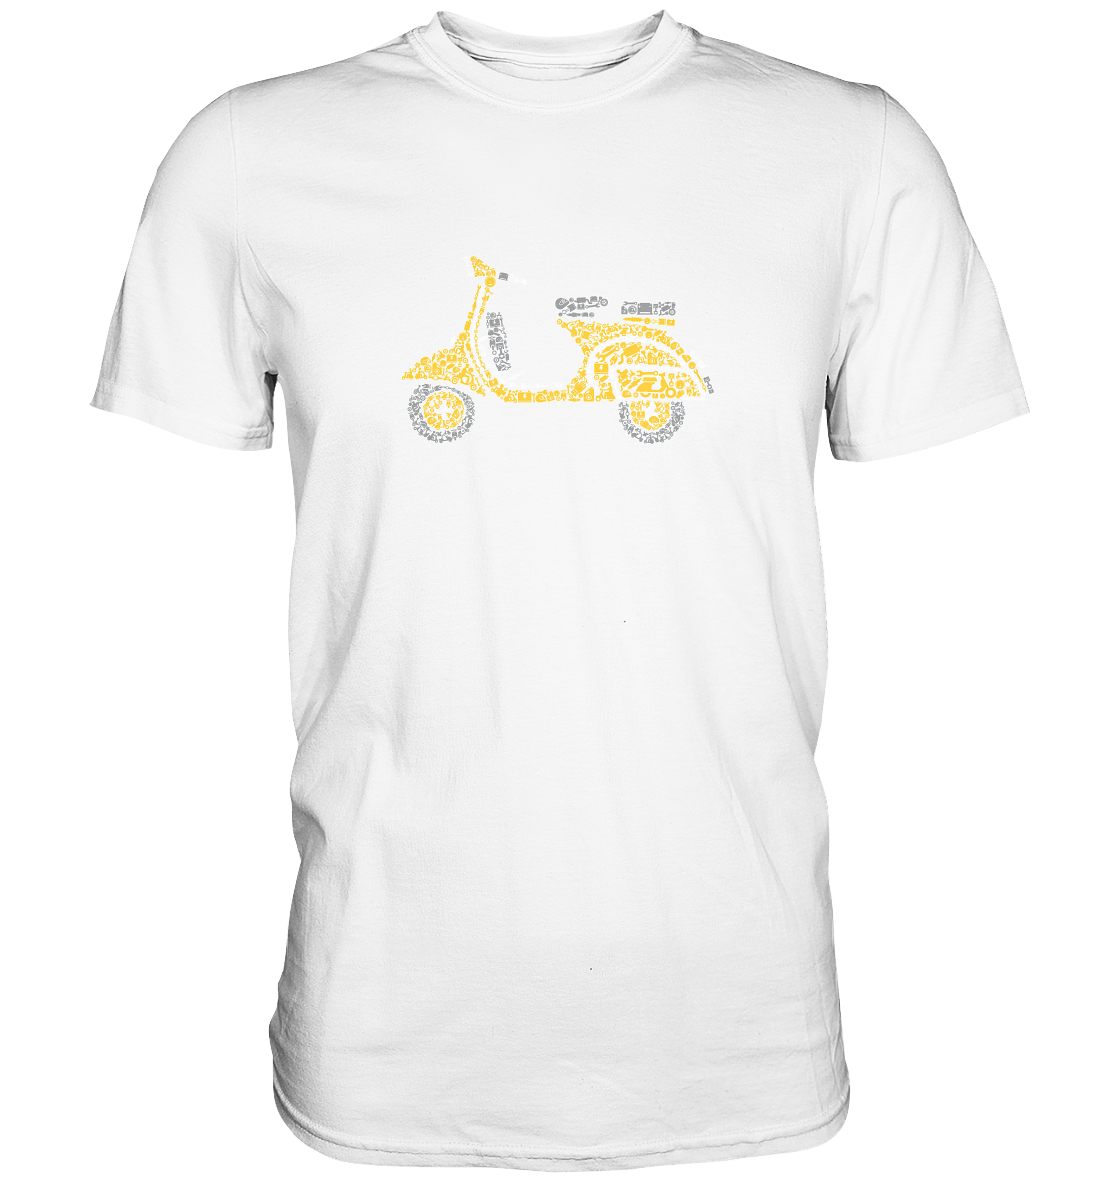 Scooter aus Scootern - Premium unisex Shirt